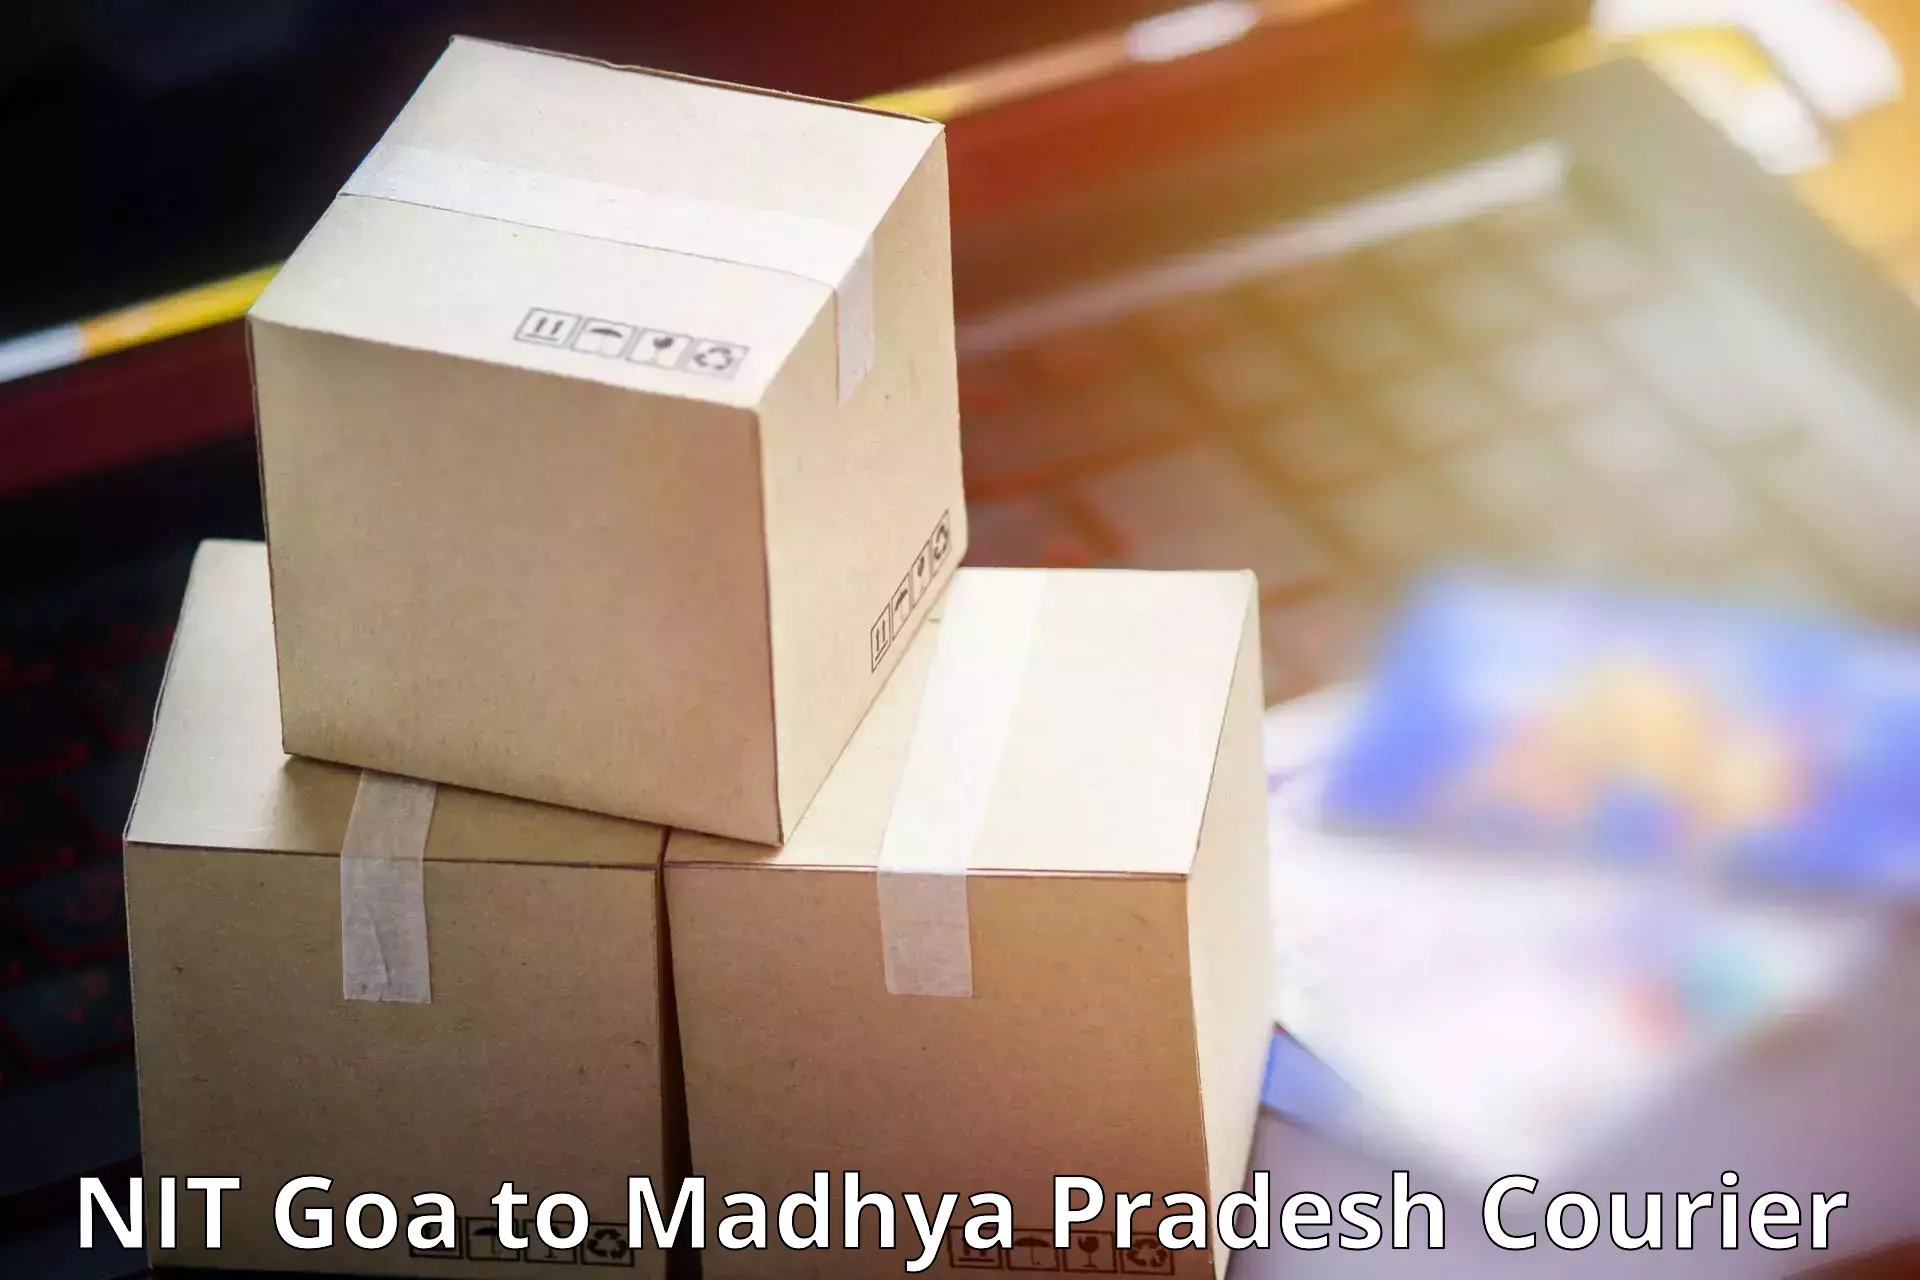 Efficient parcel service NIT Goa to Gotegaon